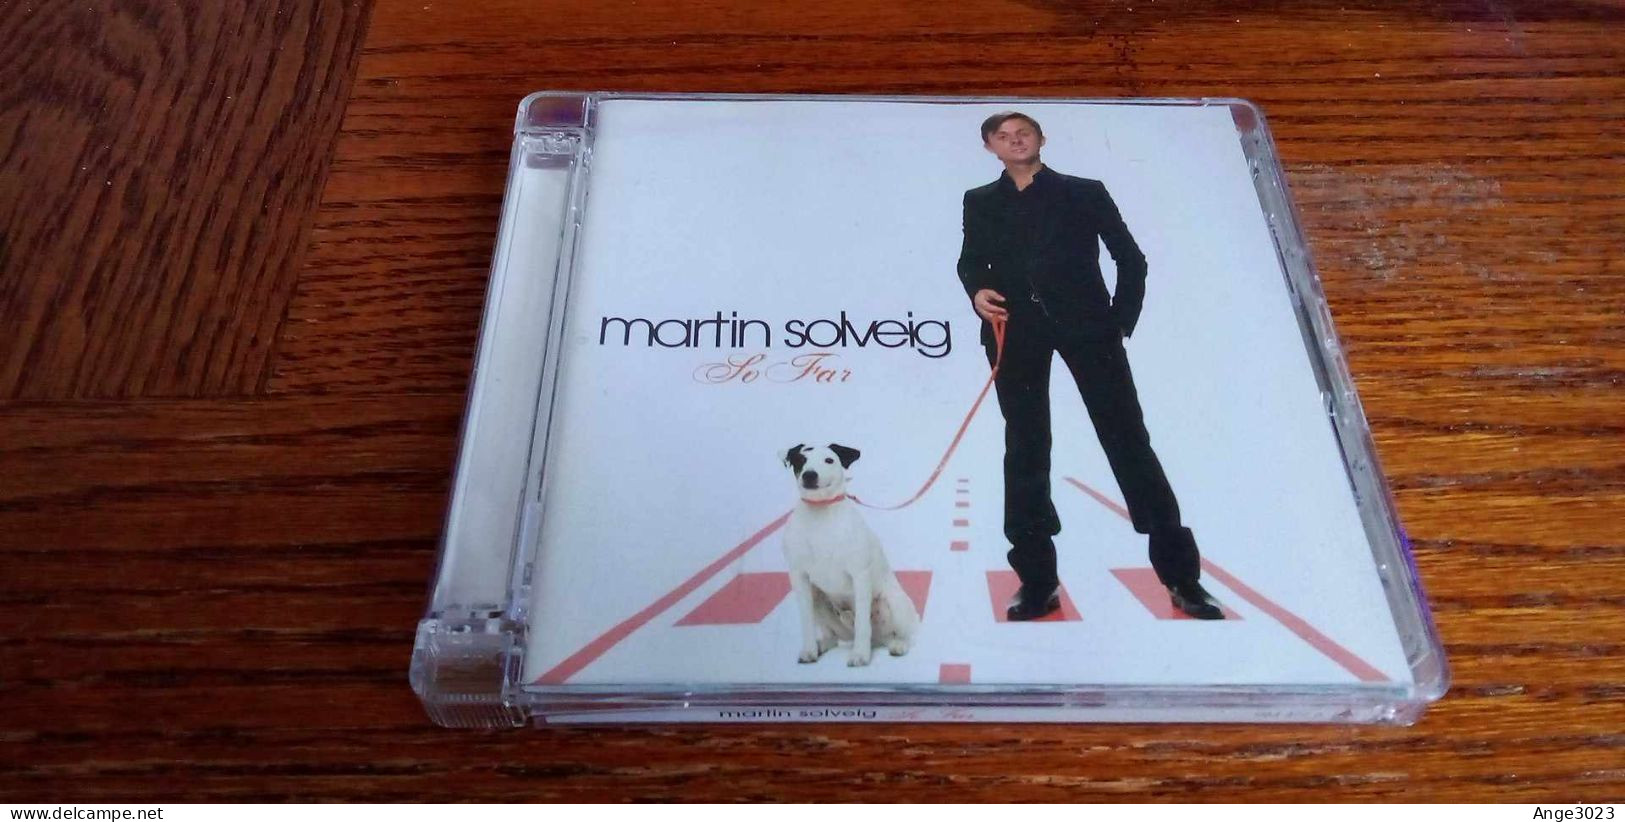 MARTIN SOLVEIG "So Far" - Dance, Techno & House